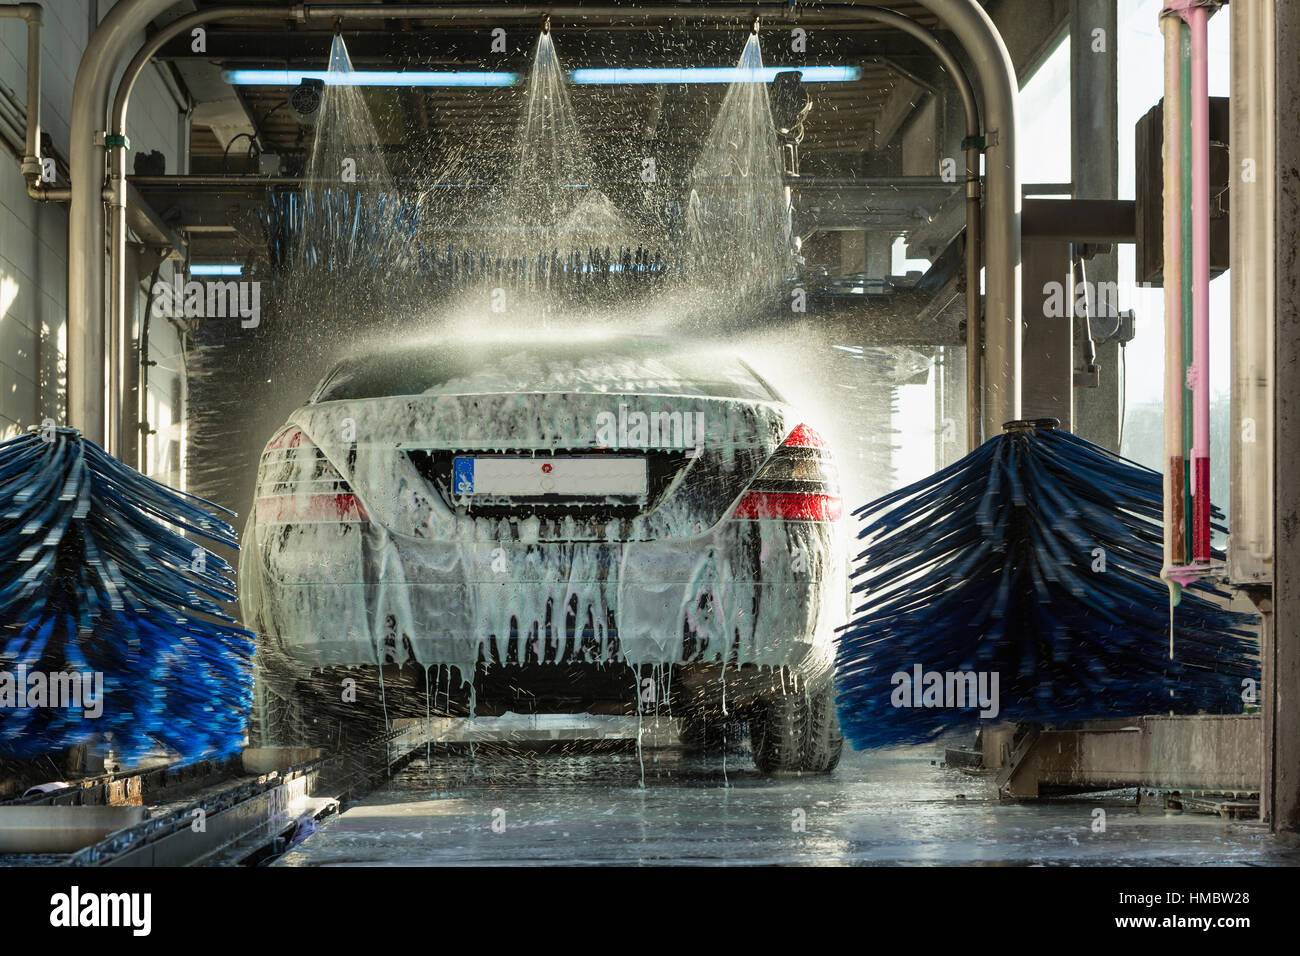 Lavage de voiture, lavage de voiture, l'eau mousse de lavage automatique en action Banque D'Images